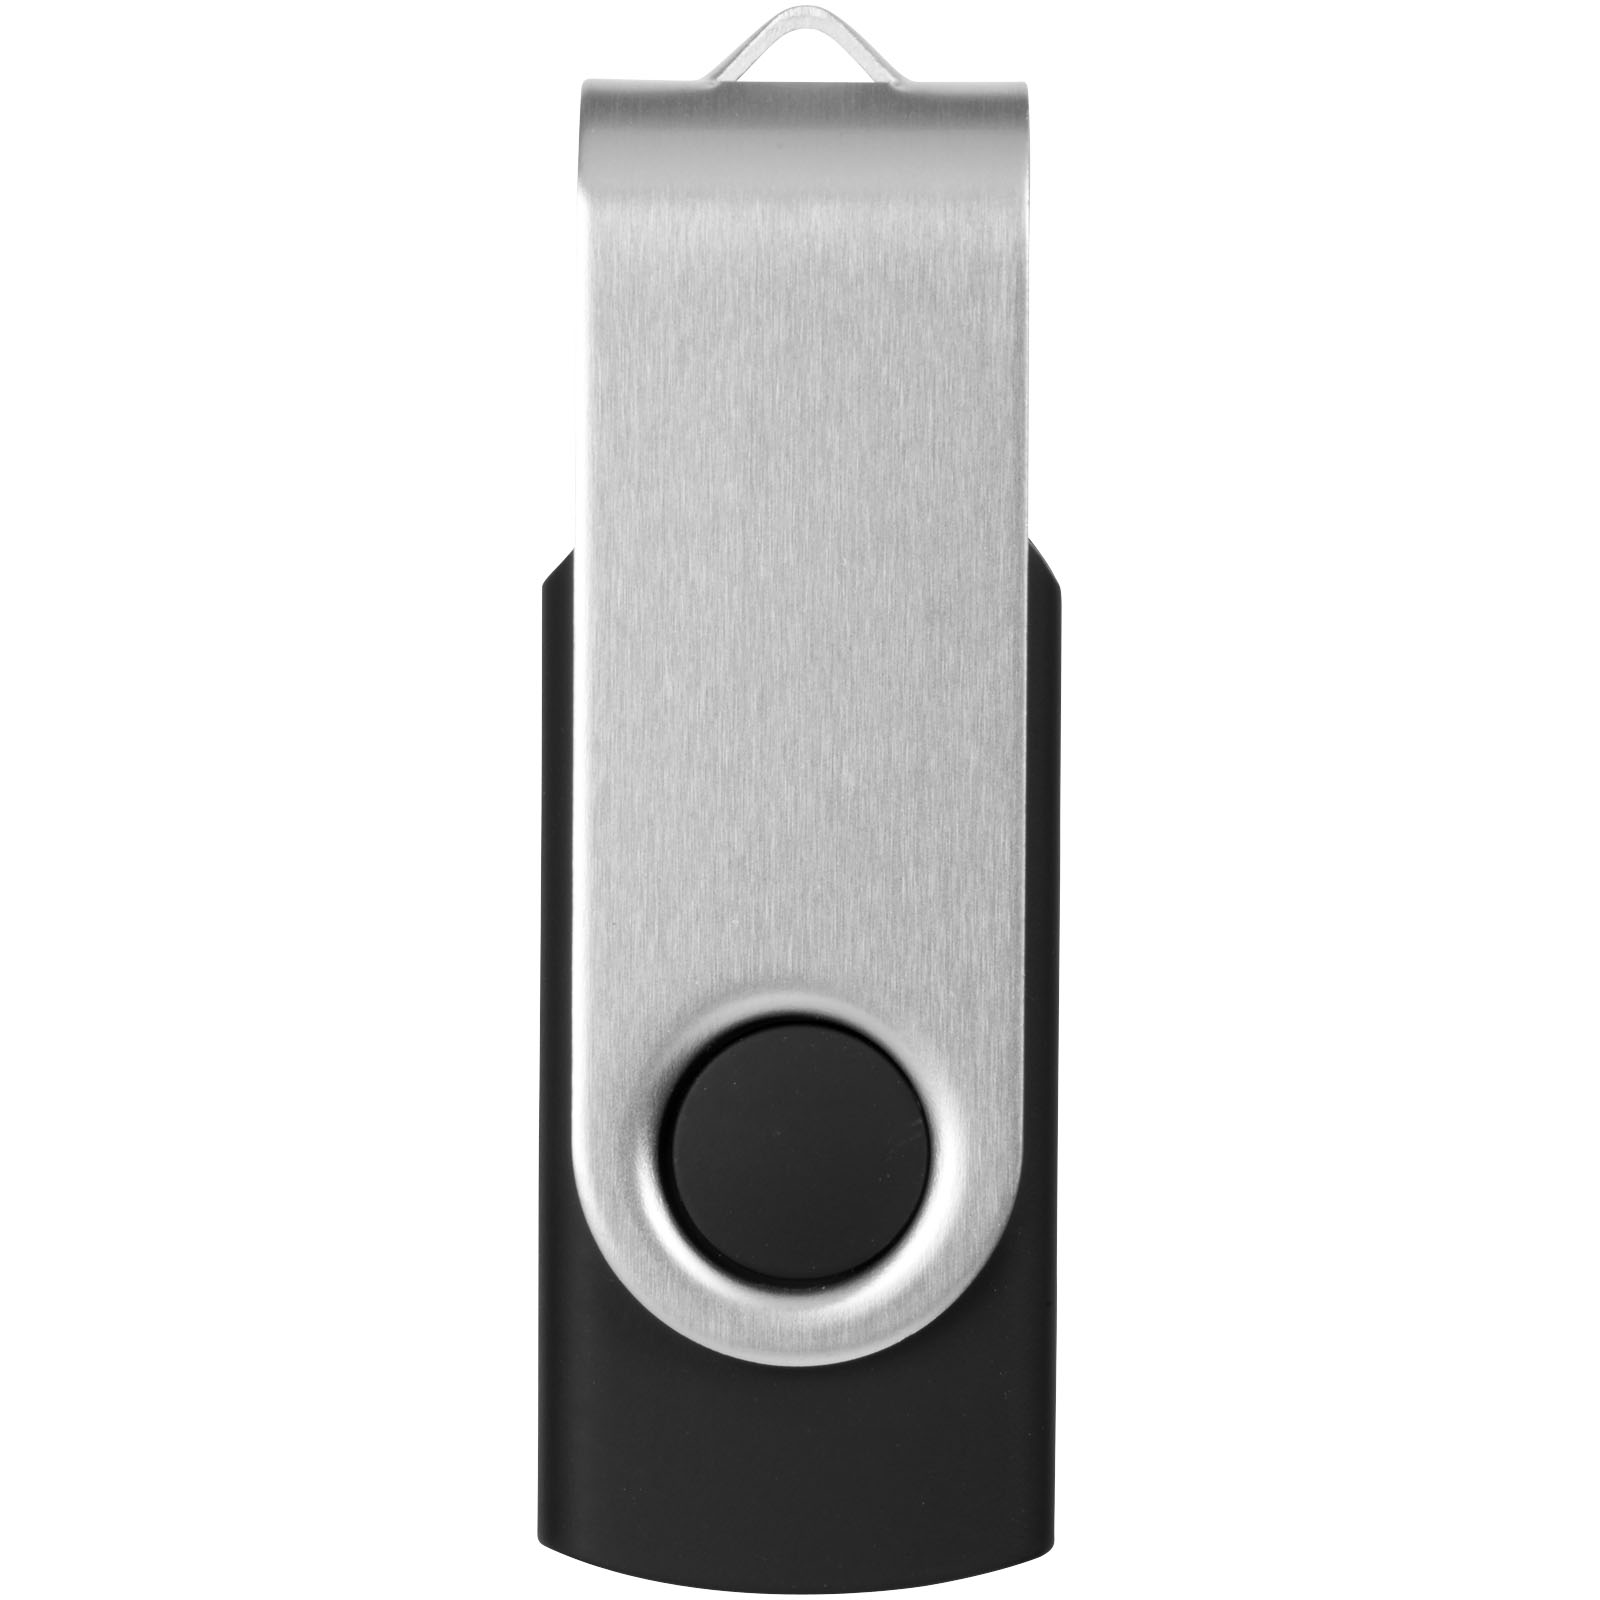 Clés USB publicitaires - Clé USB basic 16 Go Rotate - 3